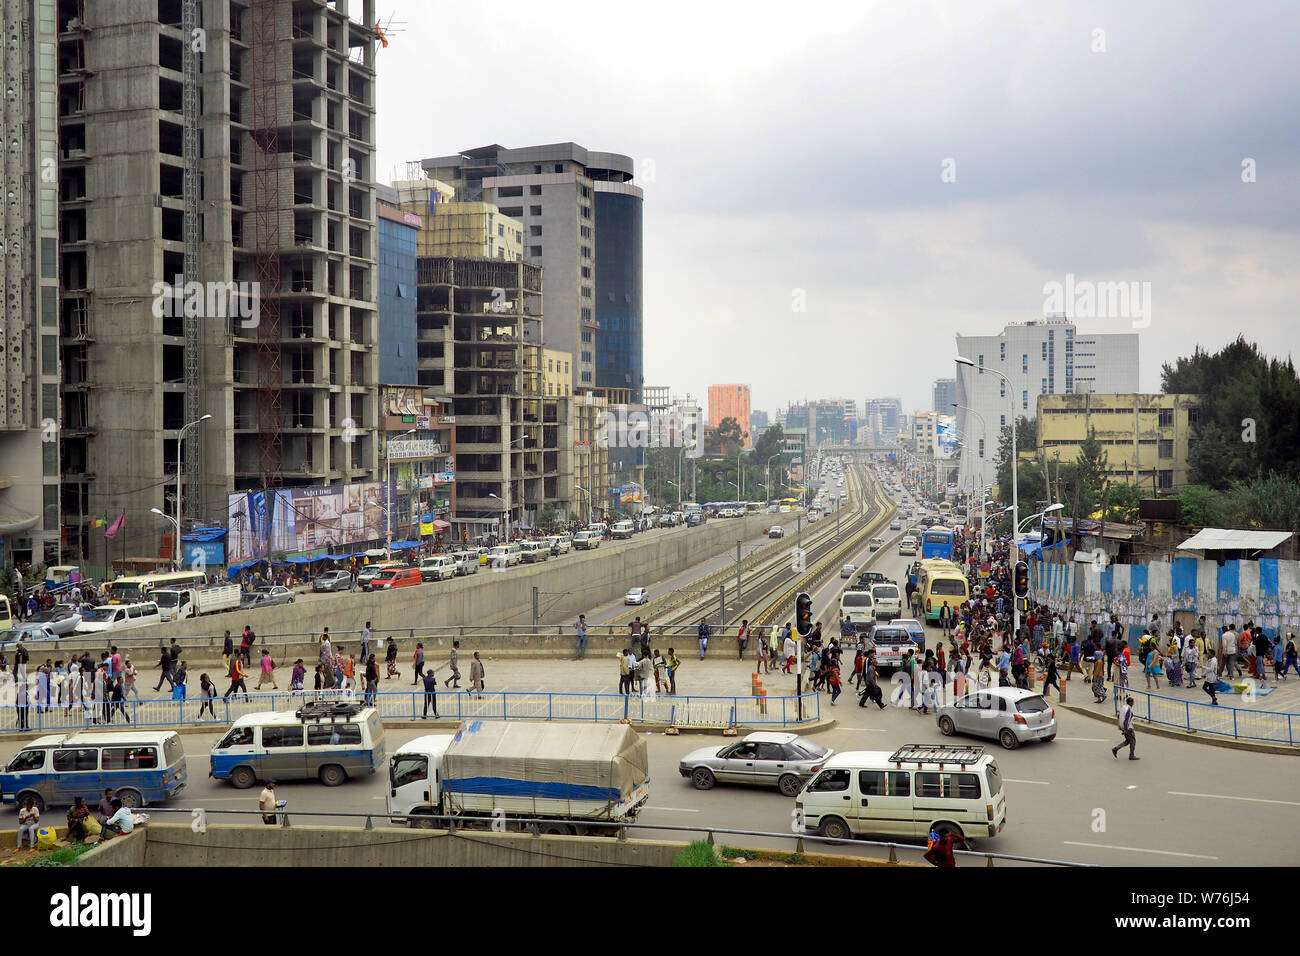 Addis Abeba, Etiopía, 18 de julio de 2019 : La gran ciudad de Addis Abeba, capital de Etiopía, es una de las ciudades de más rápido crecimiento en el continente africano. Foto de stock